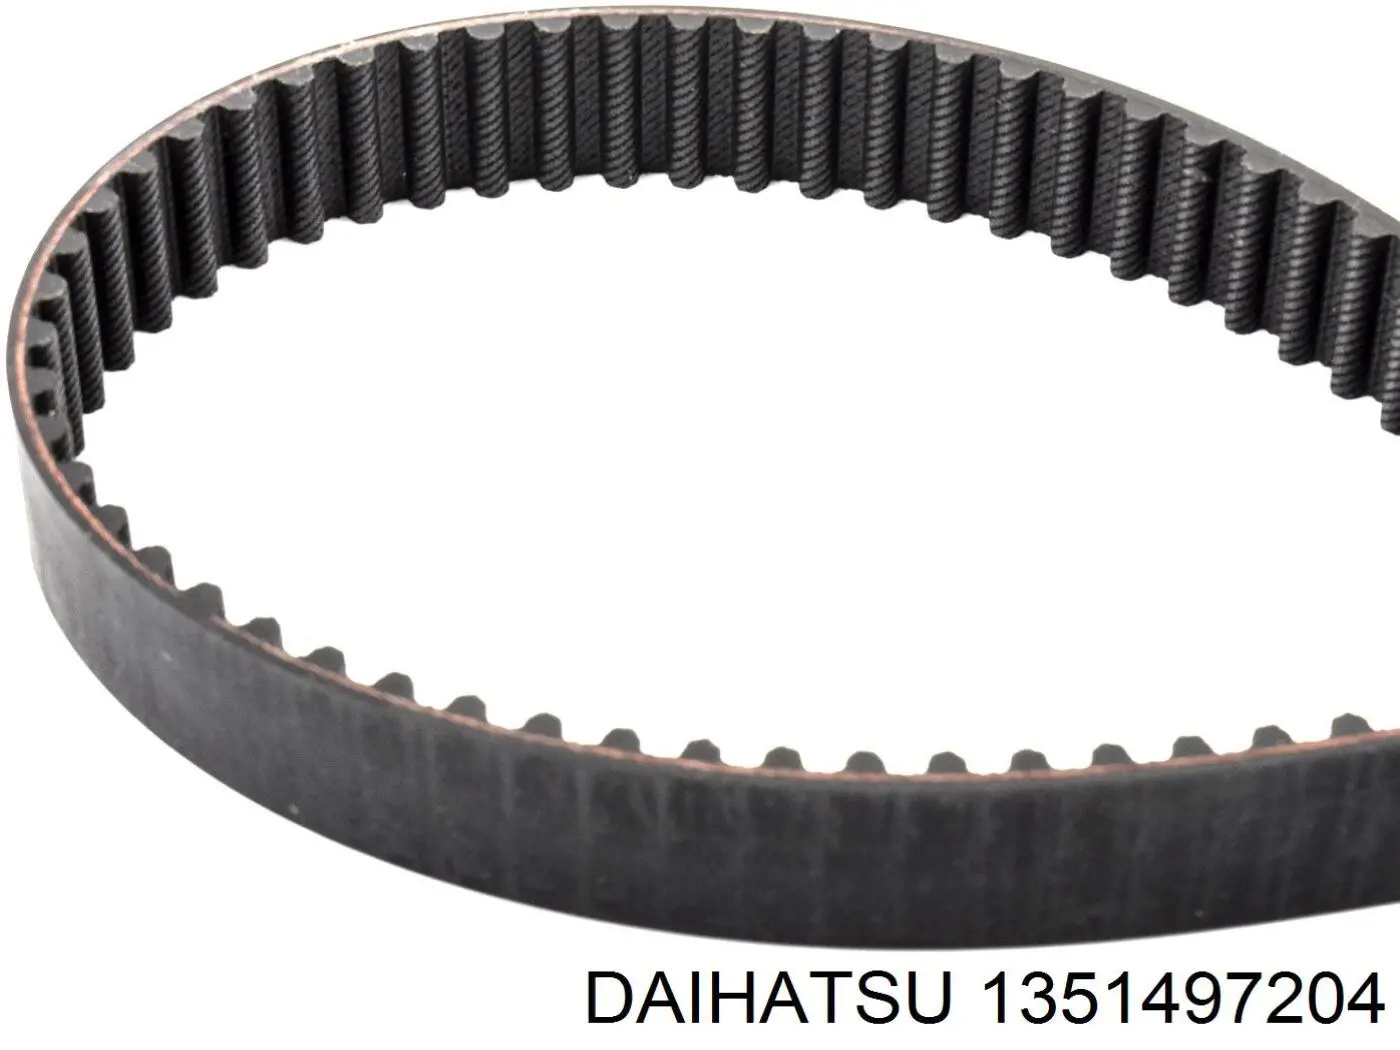 1351497204 Daihatsu ремень грм